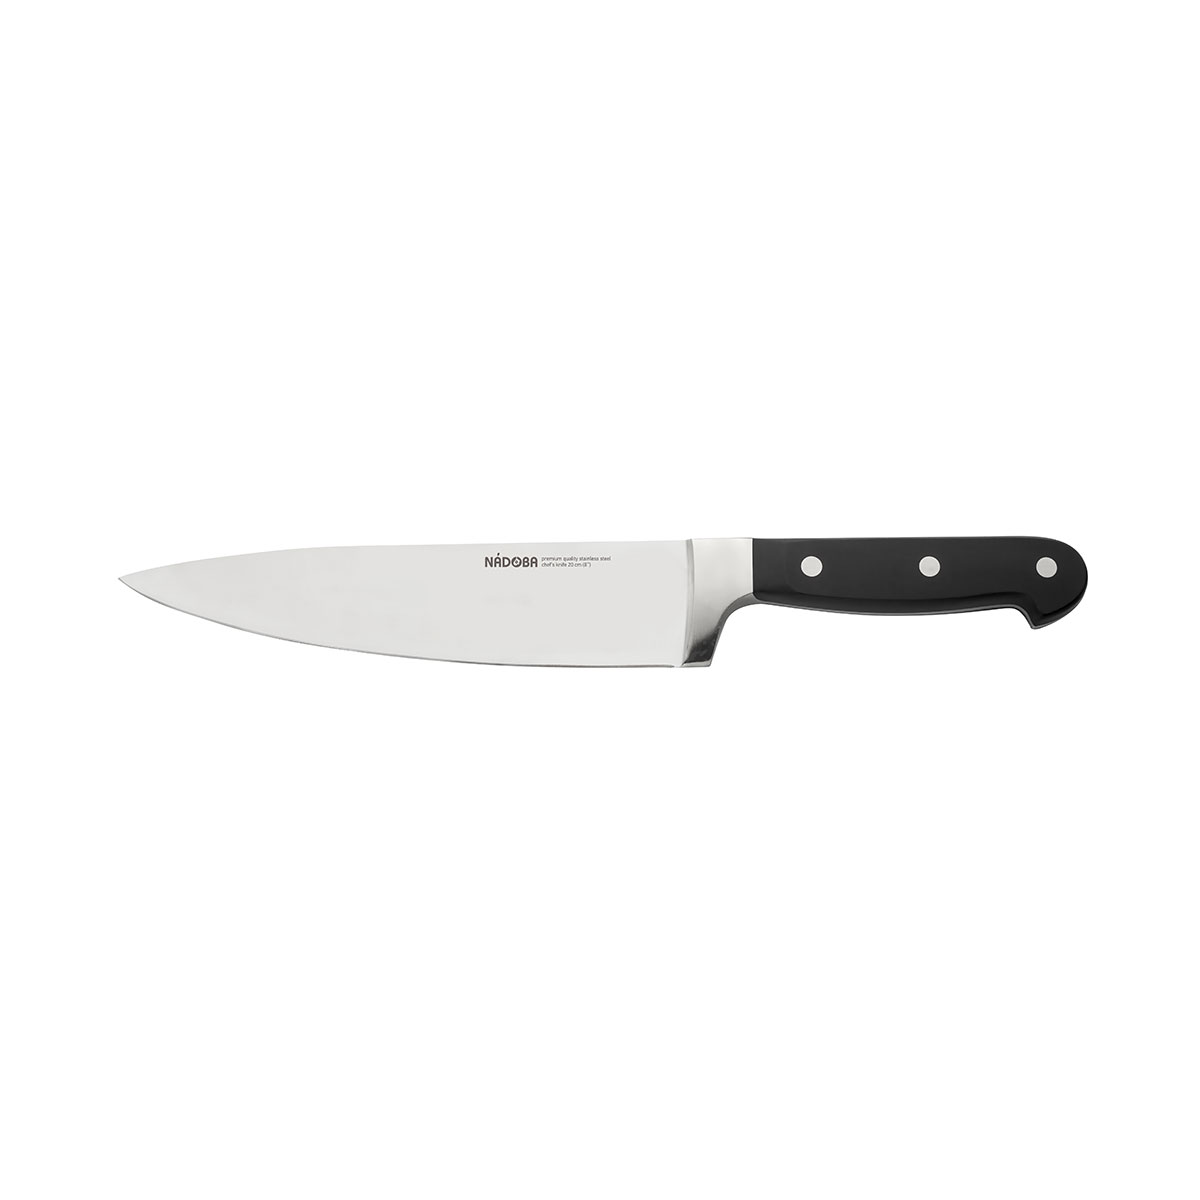 Нож Nadoba поварской 724213, 20 см нож поварской nadoba jana 20 см 723110